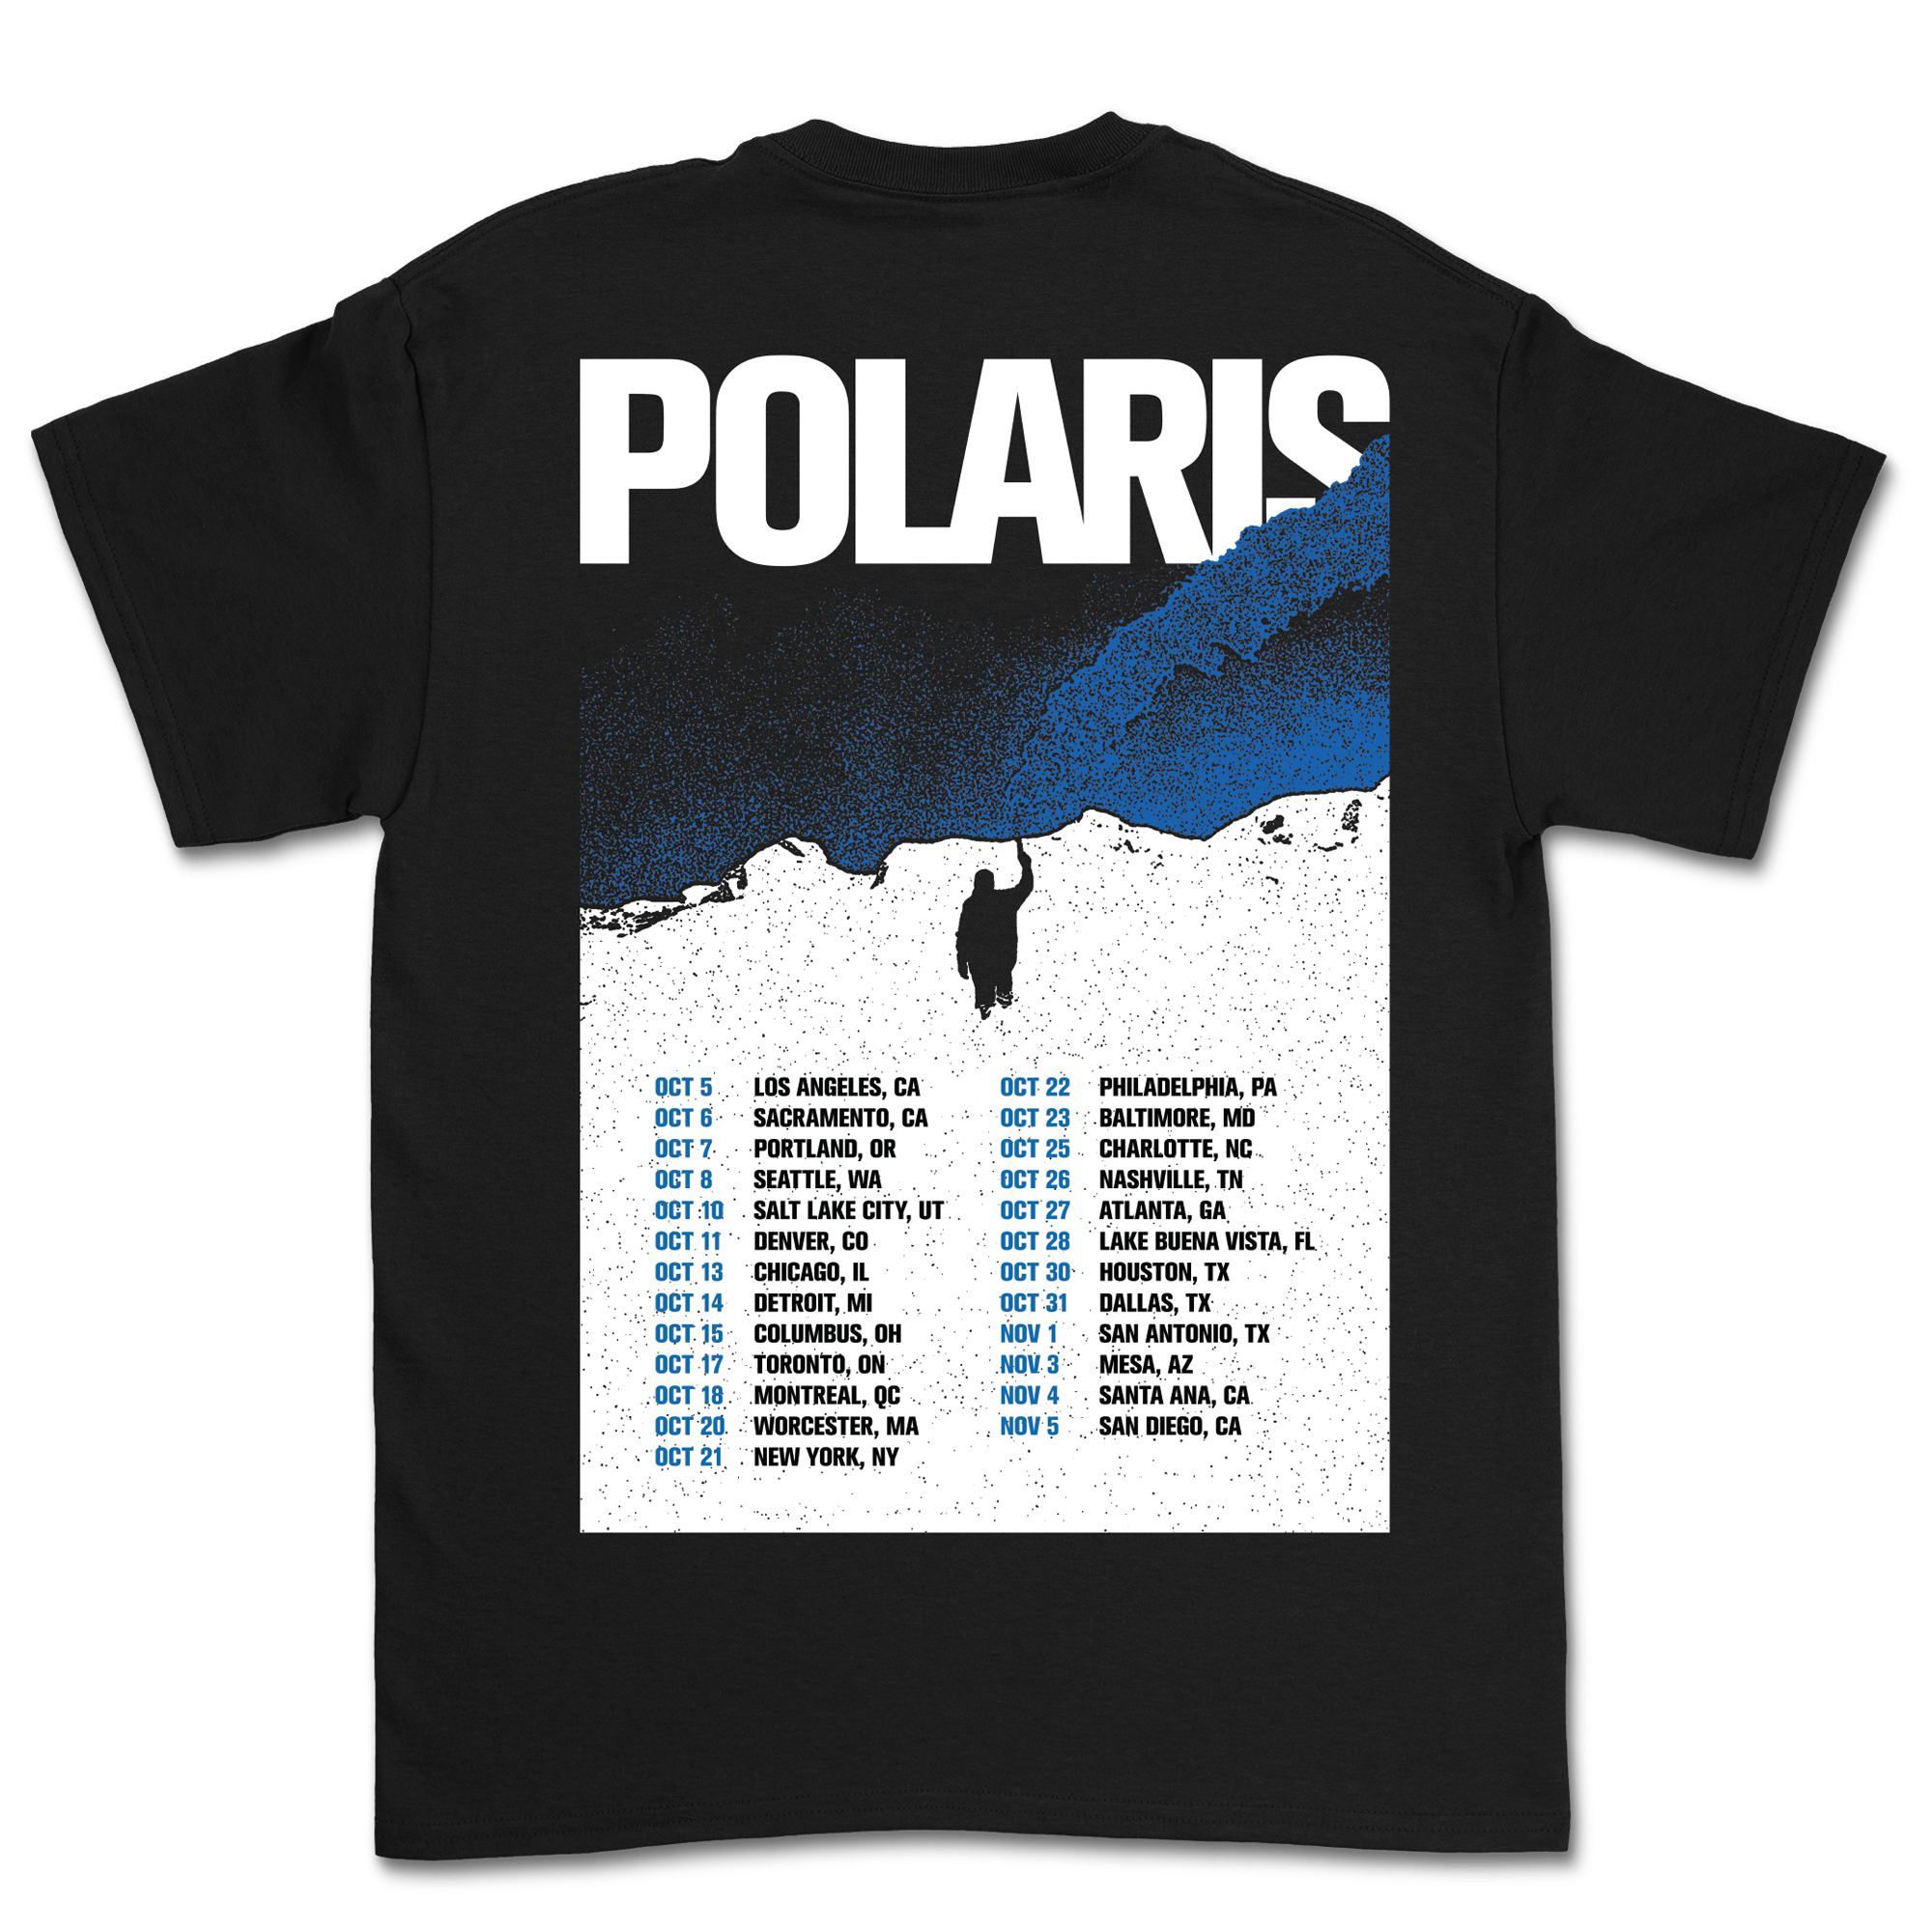 Polaris - US Tour T-Shirt